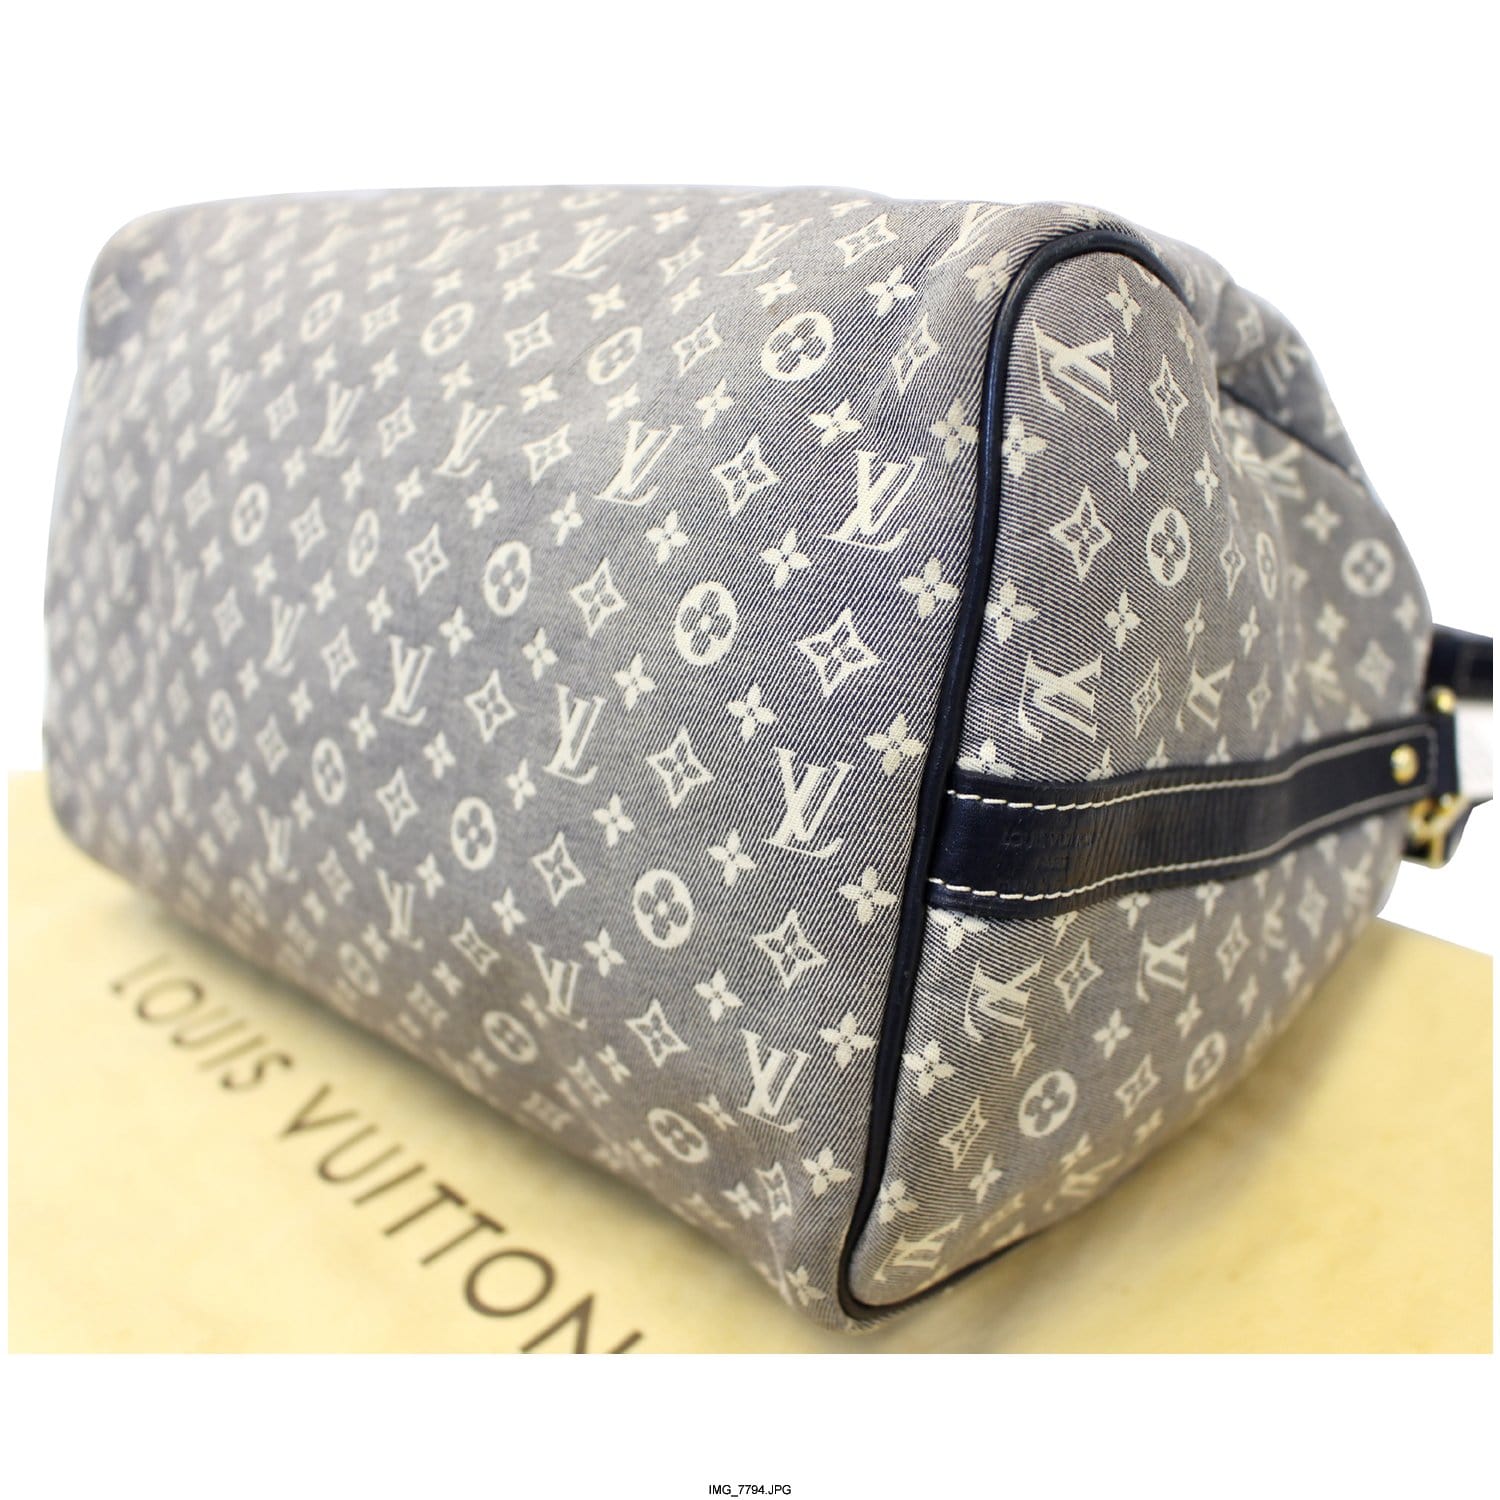 Louis Vuitton Sepia Monogram Mini Lin Idylle Speedy Bandouliere 30 with Strap 240257